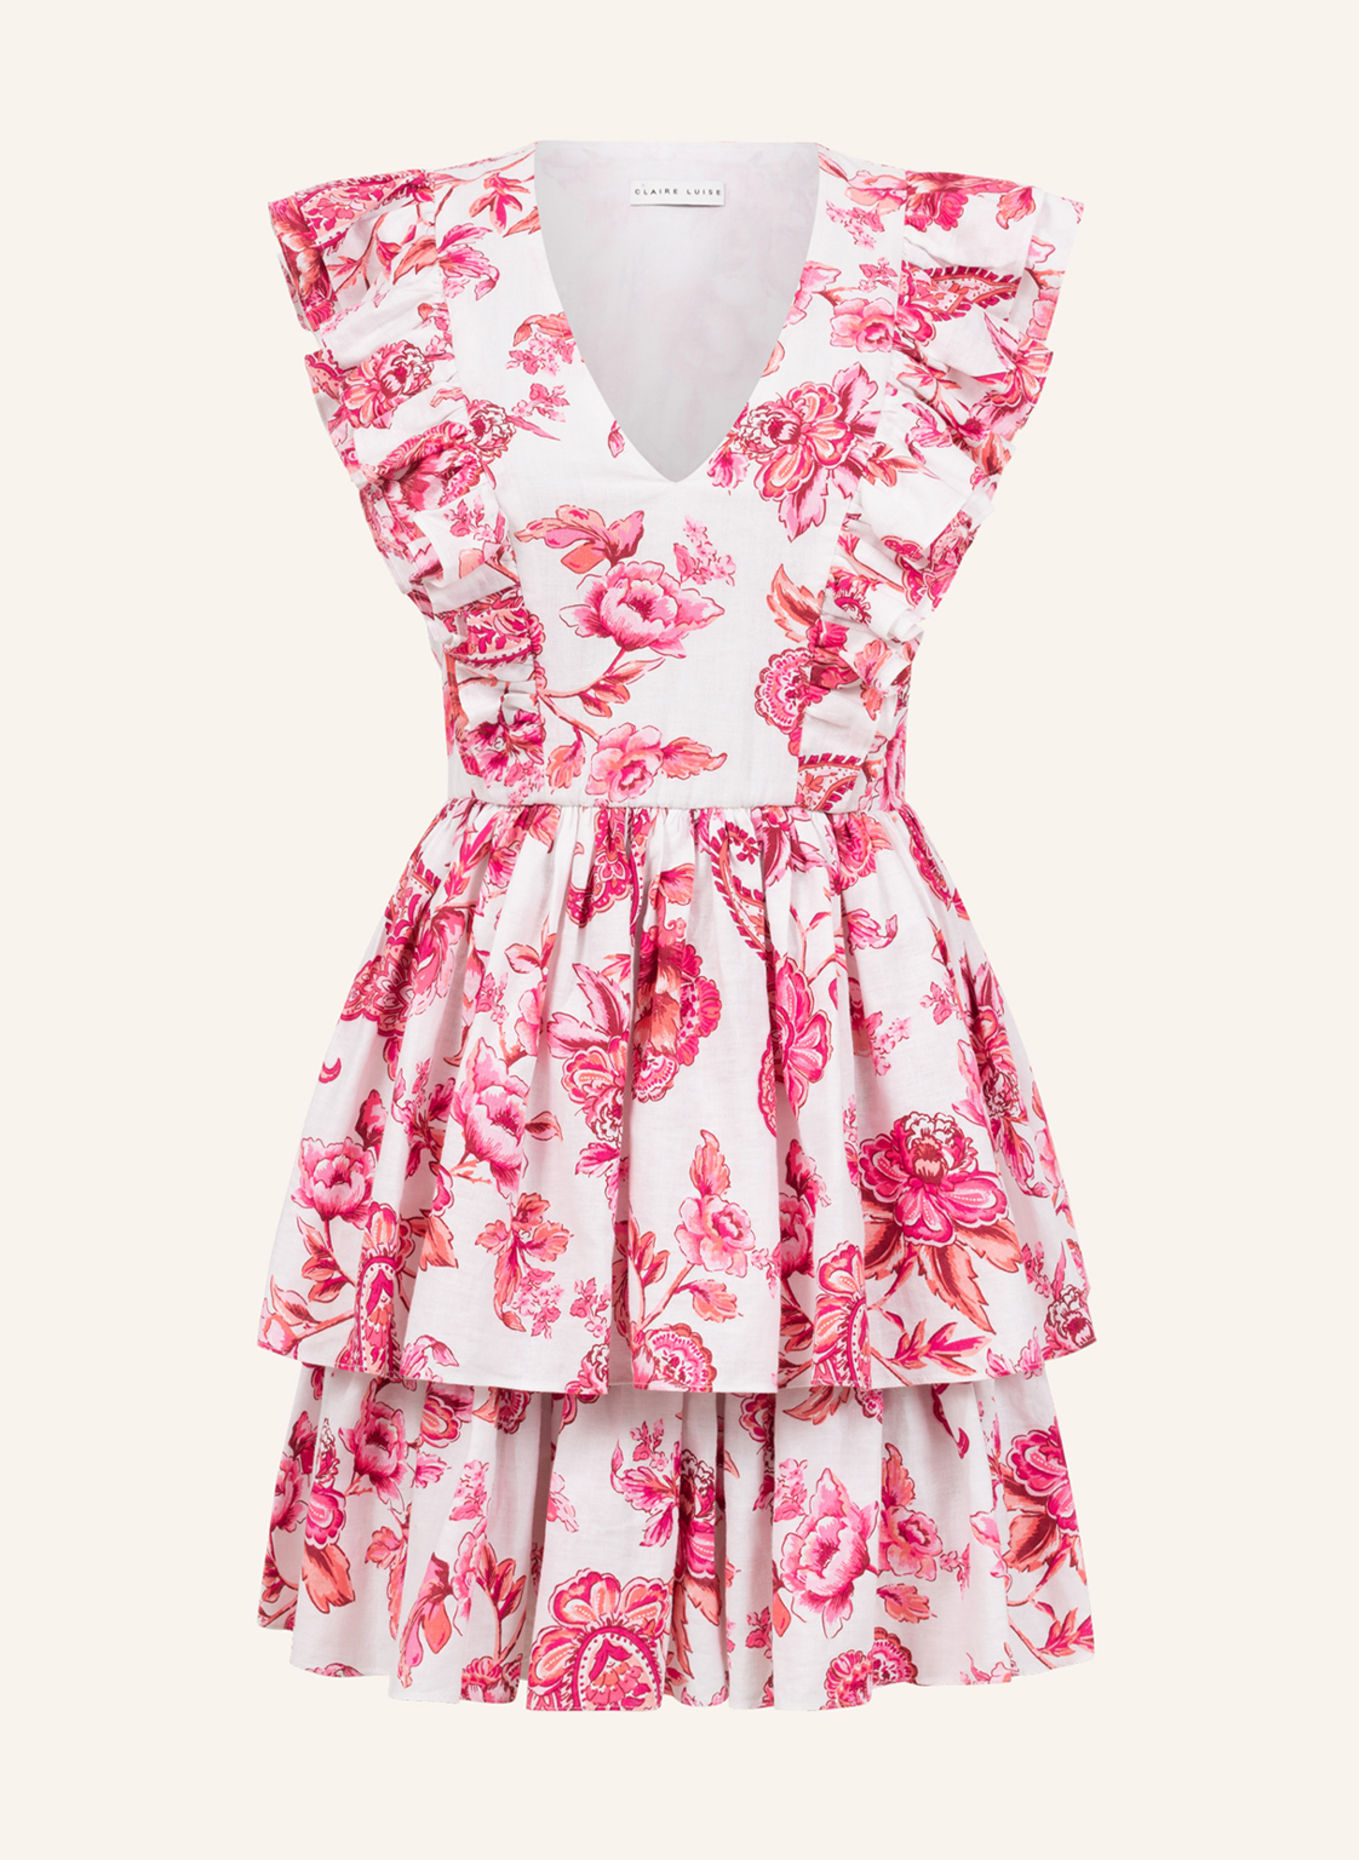 CLAIRE LUISE Kleid, Farbe: PINK (Bild 1)